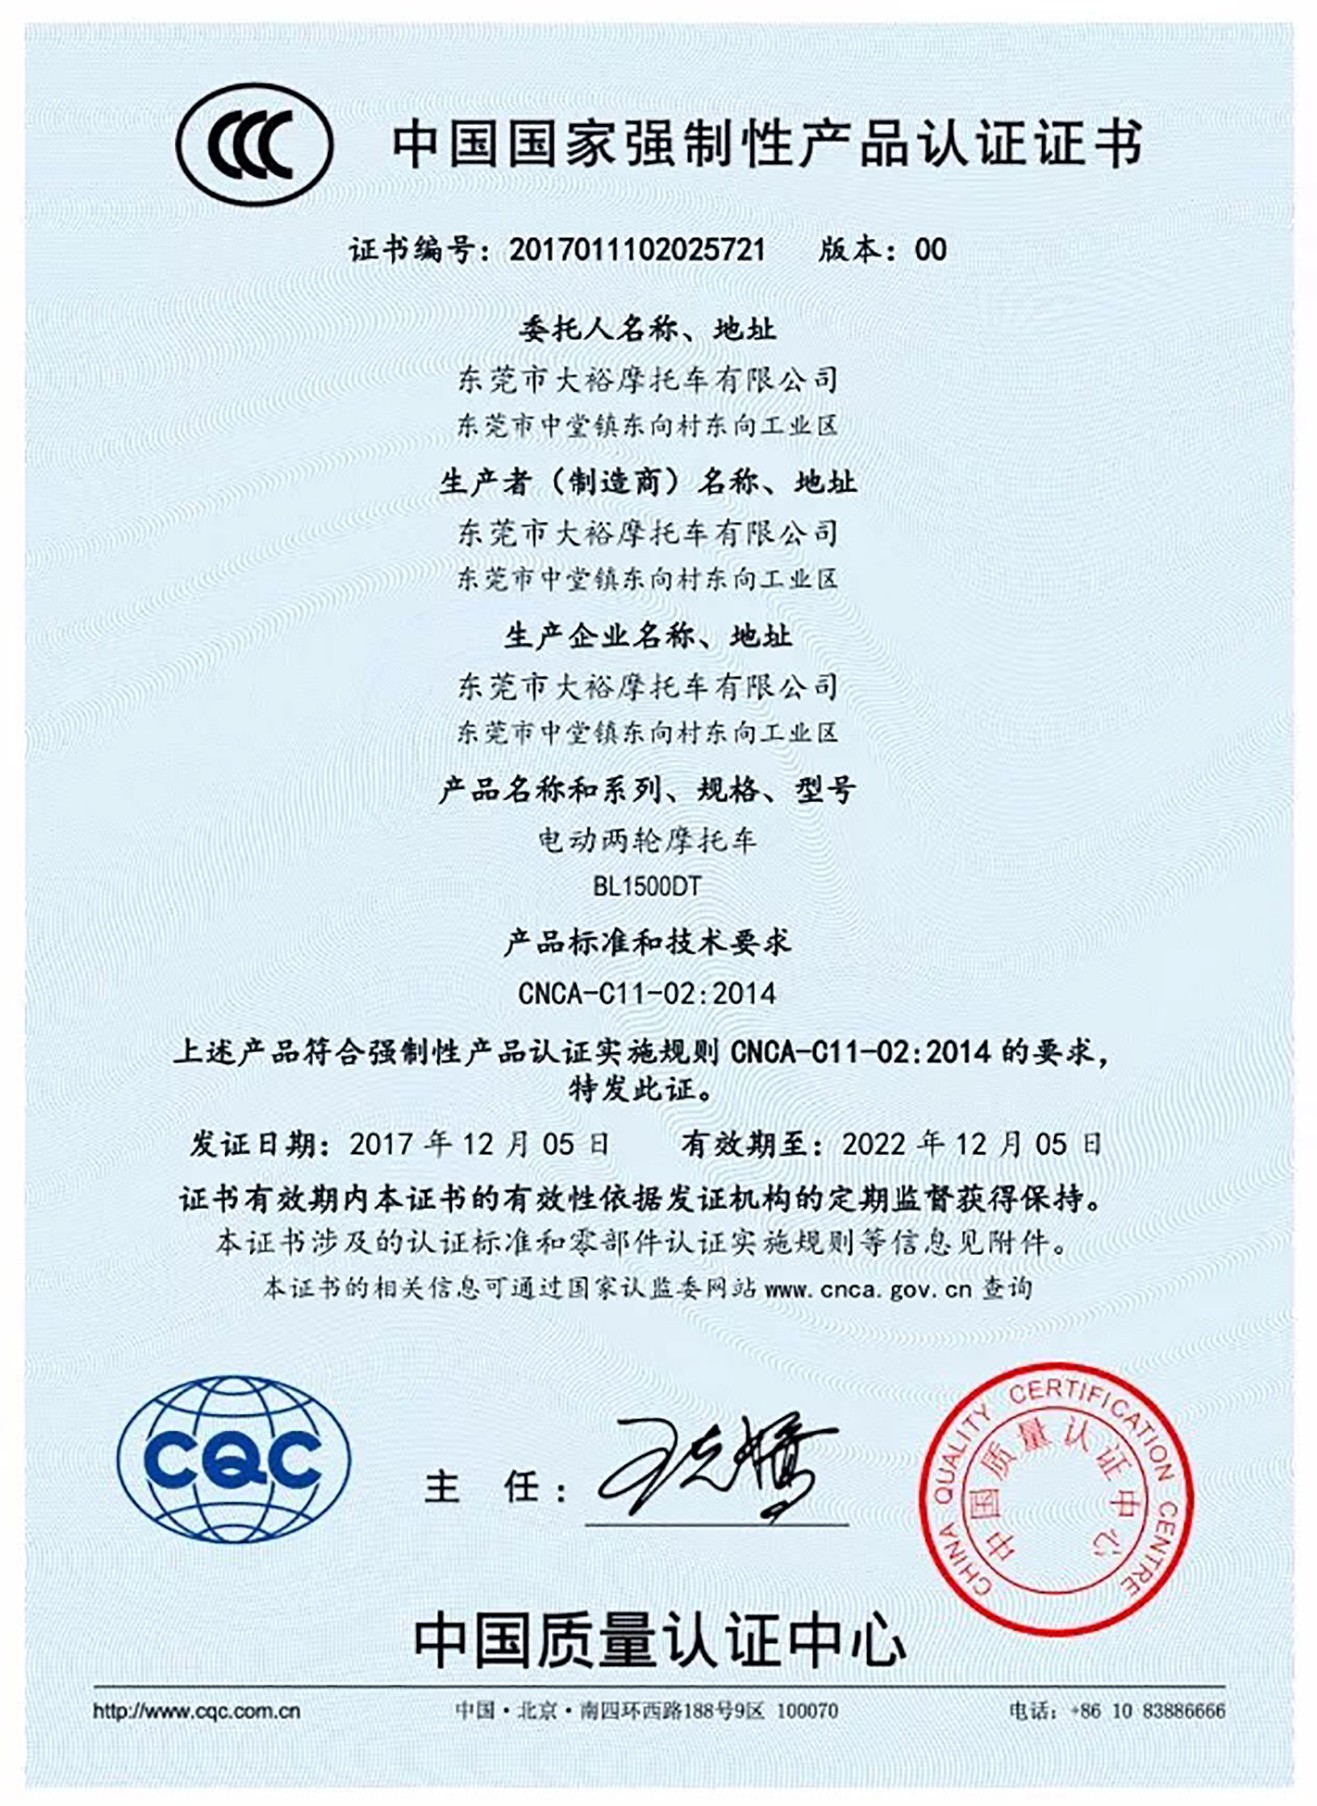 Certificat CCC